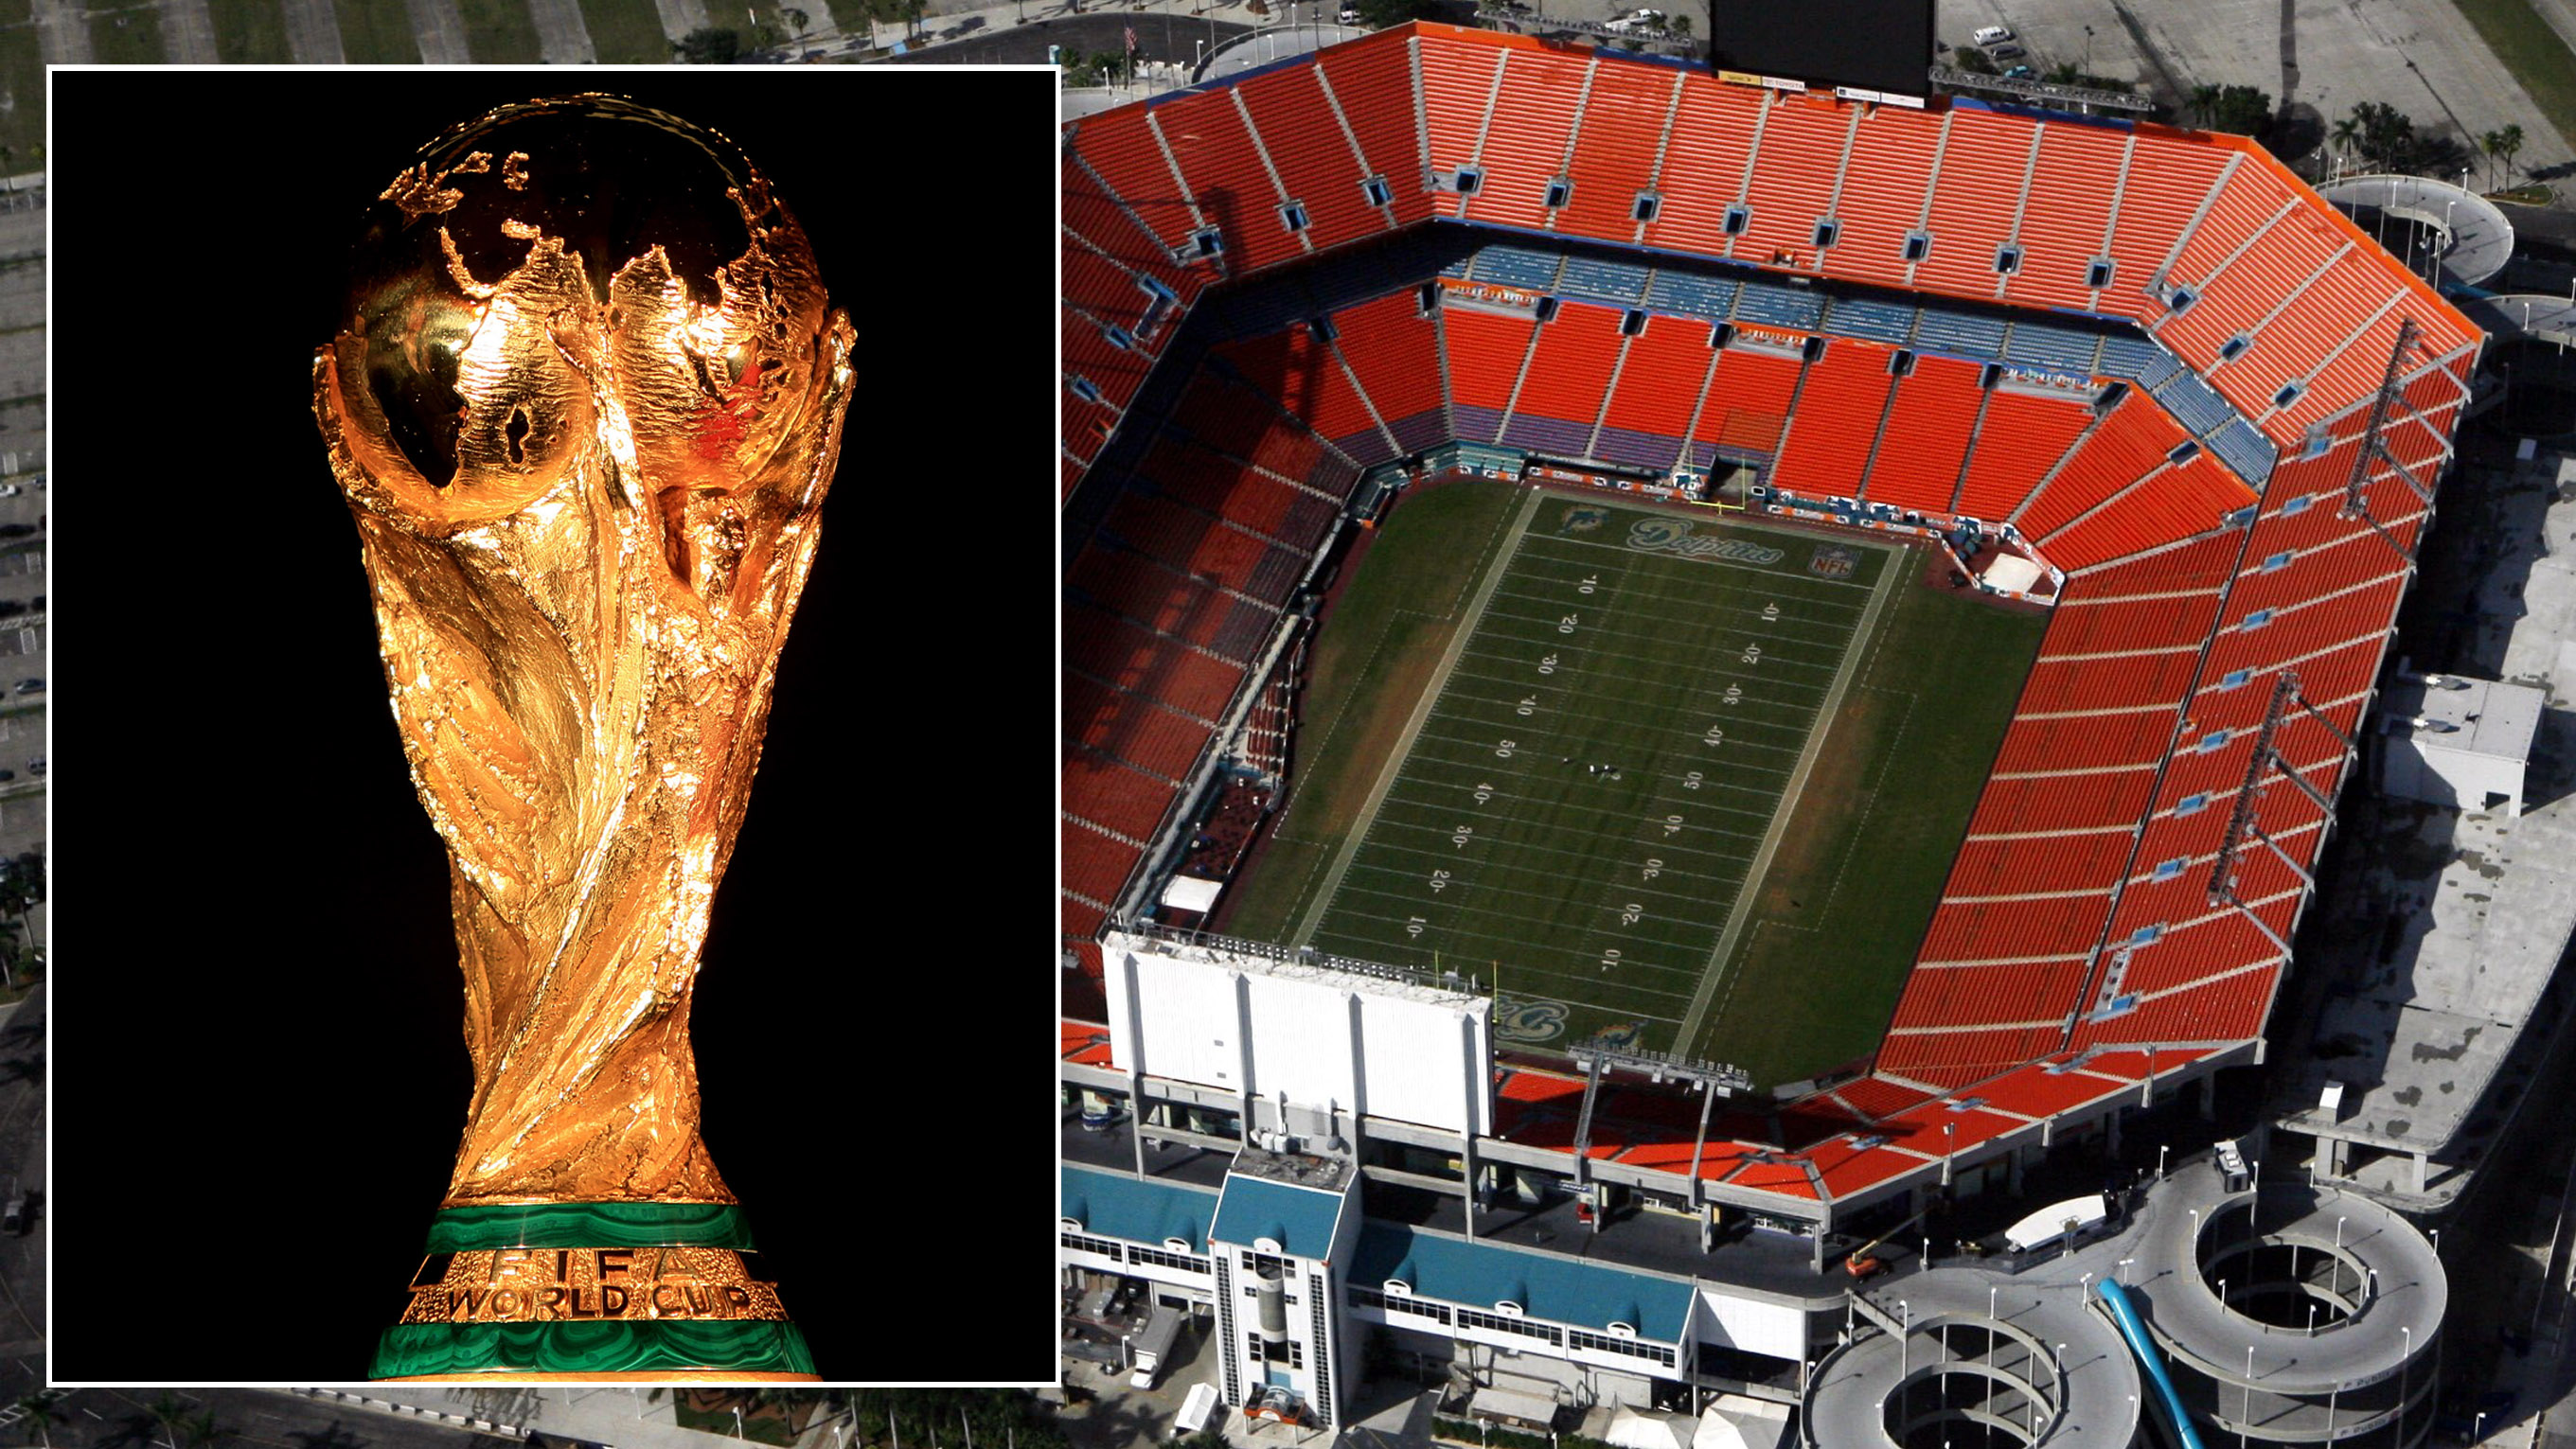 Miami será uma das cidades da Copa de 2026 que vai ser realizada nos EUA,  Canadá e México - AcheiUSA